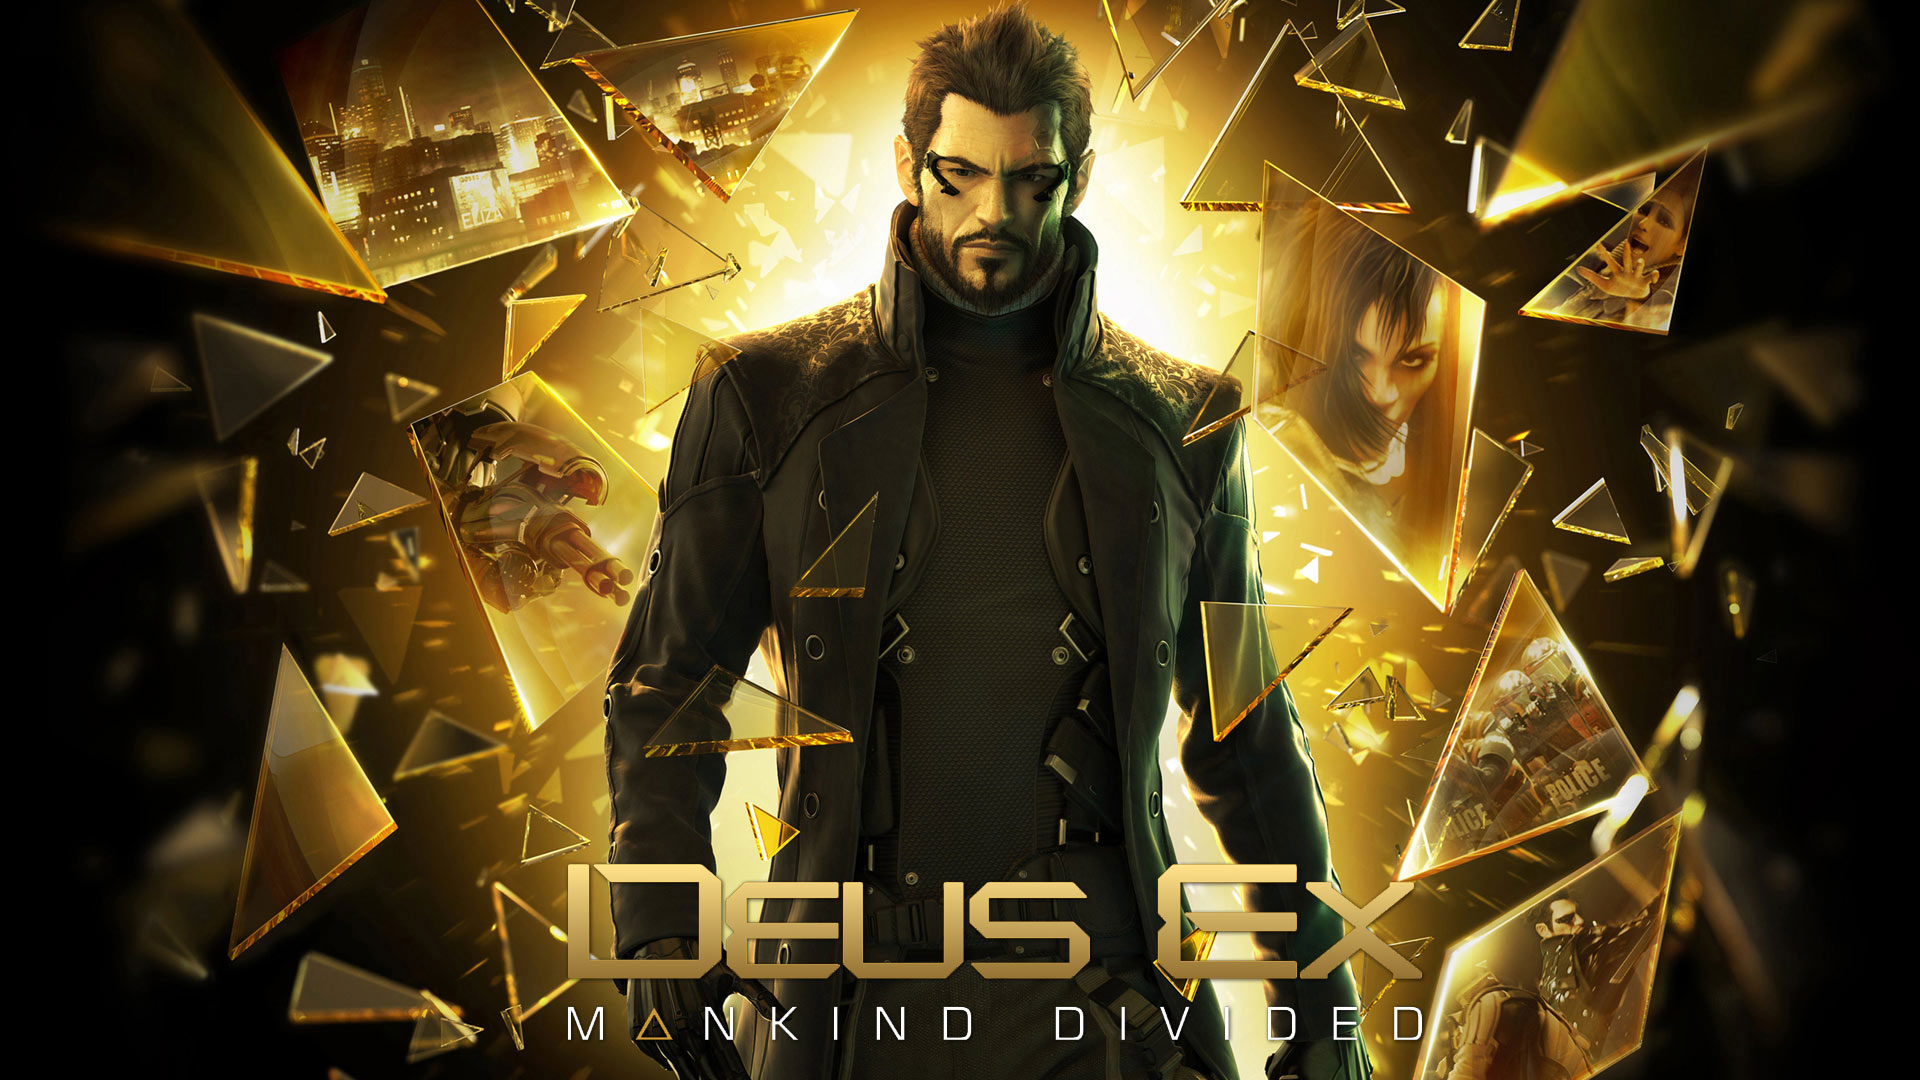 نویسنده بازی Deus Ex به استودیو بایوور پیوست